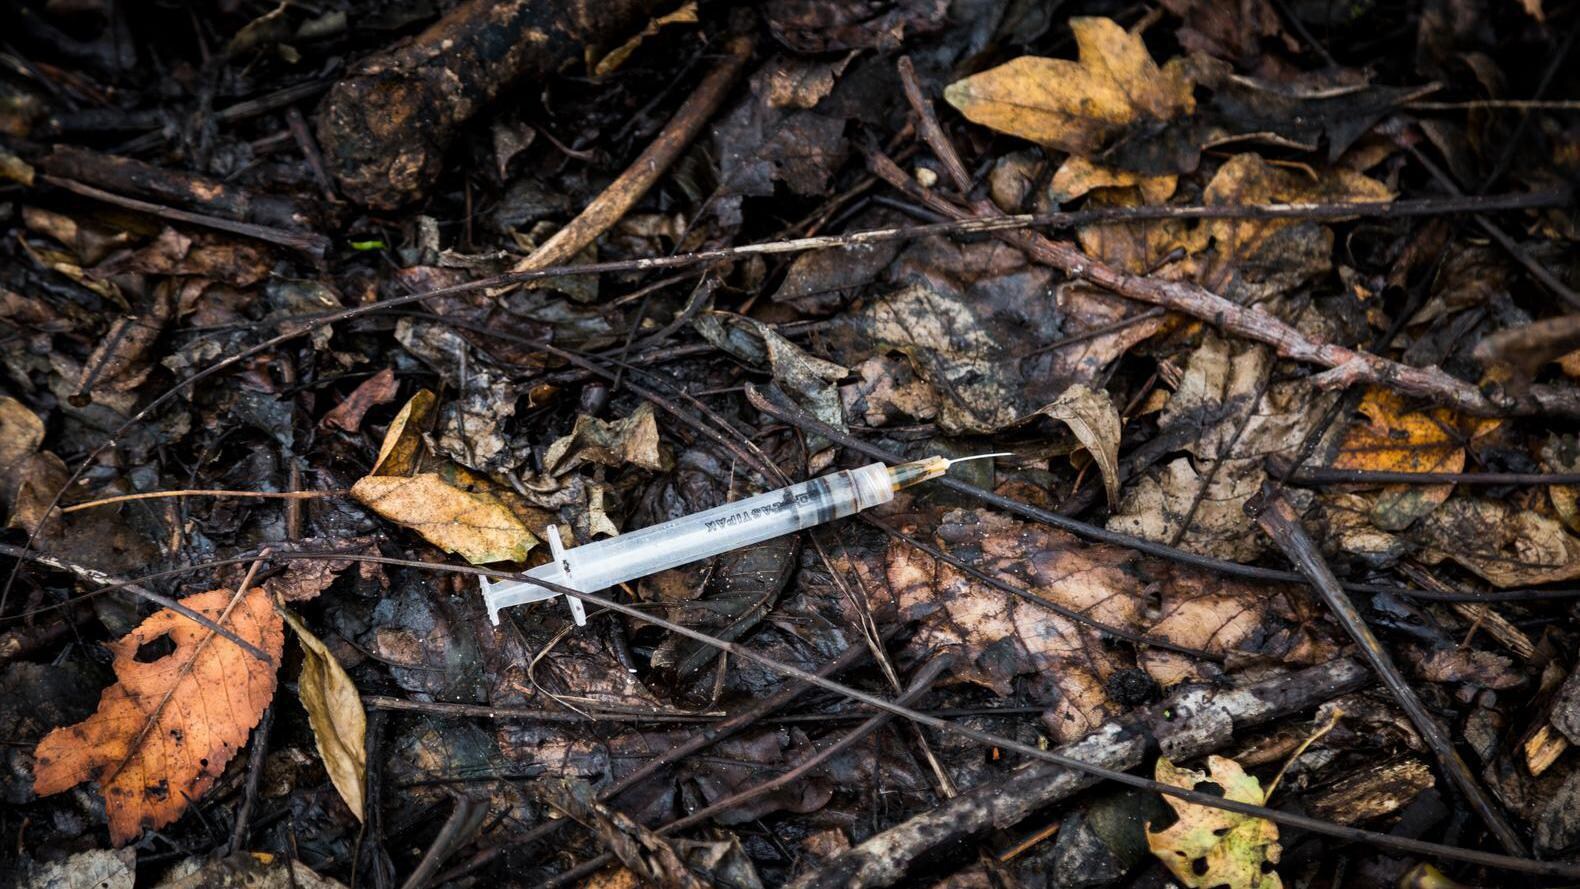 Heroïnelijn opgerold in onderzoek moord Wittenburg